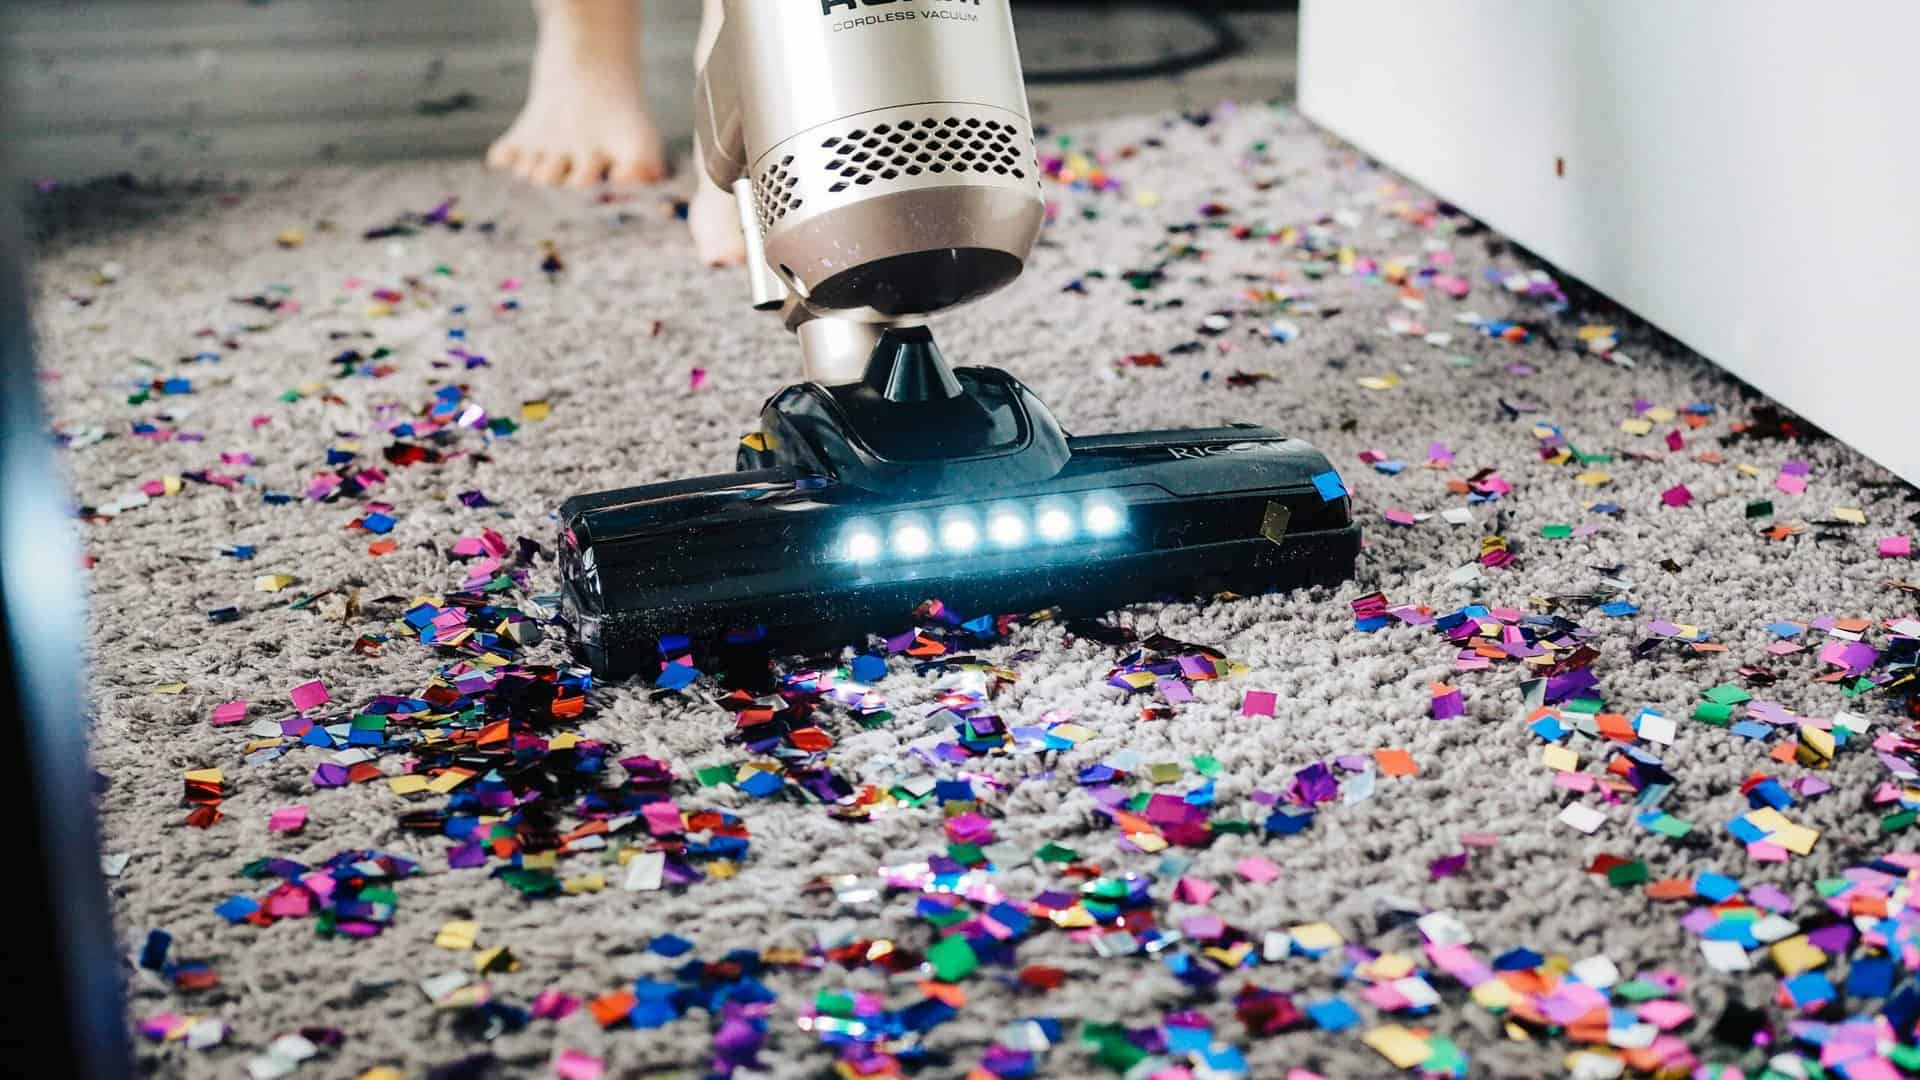 snoerloze stofzuiger met led-verlichting zuigt confetti van hoogpolig tapijt